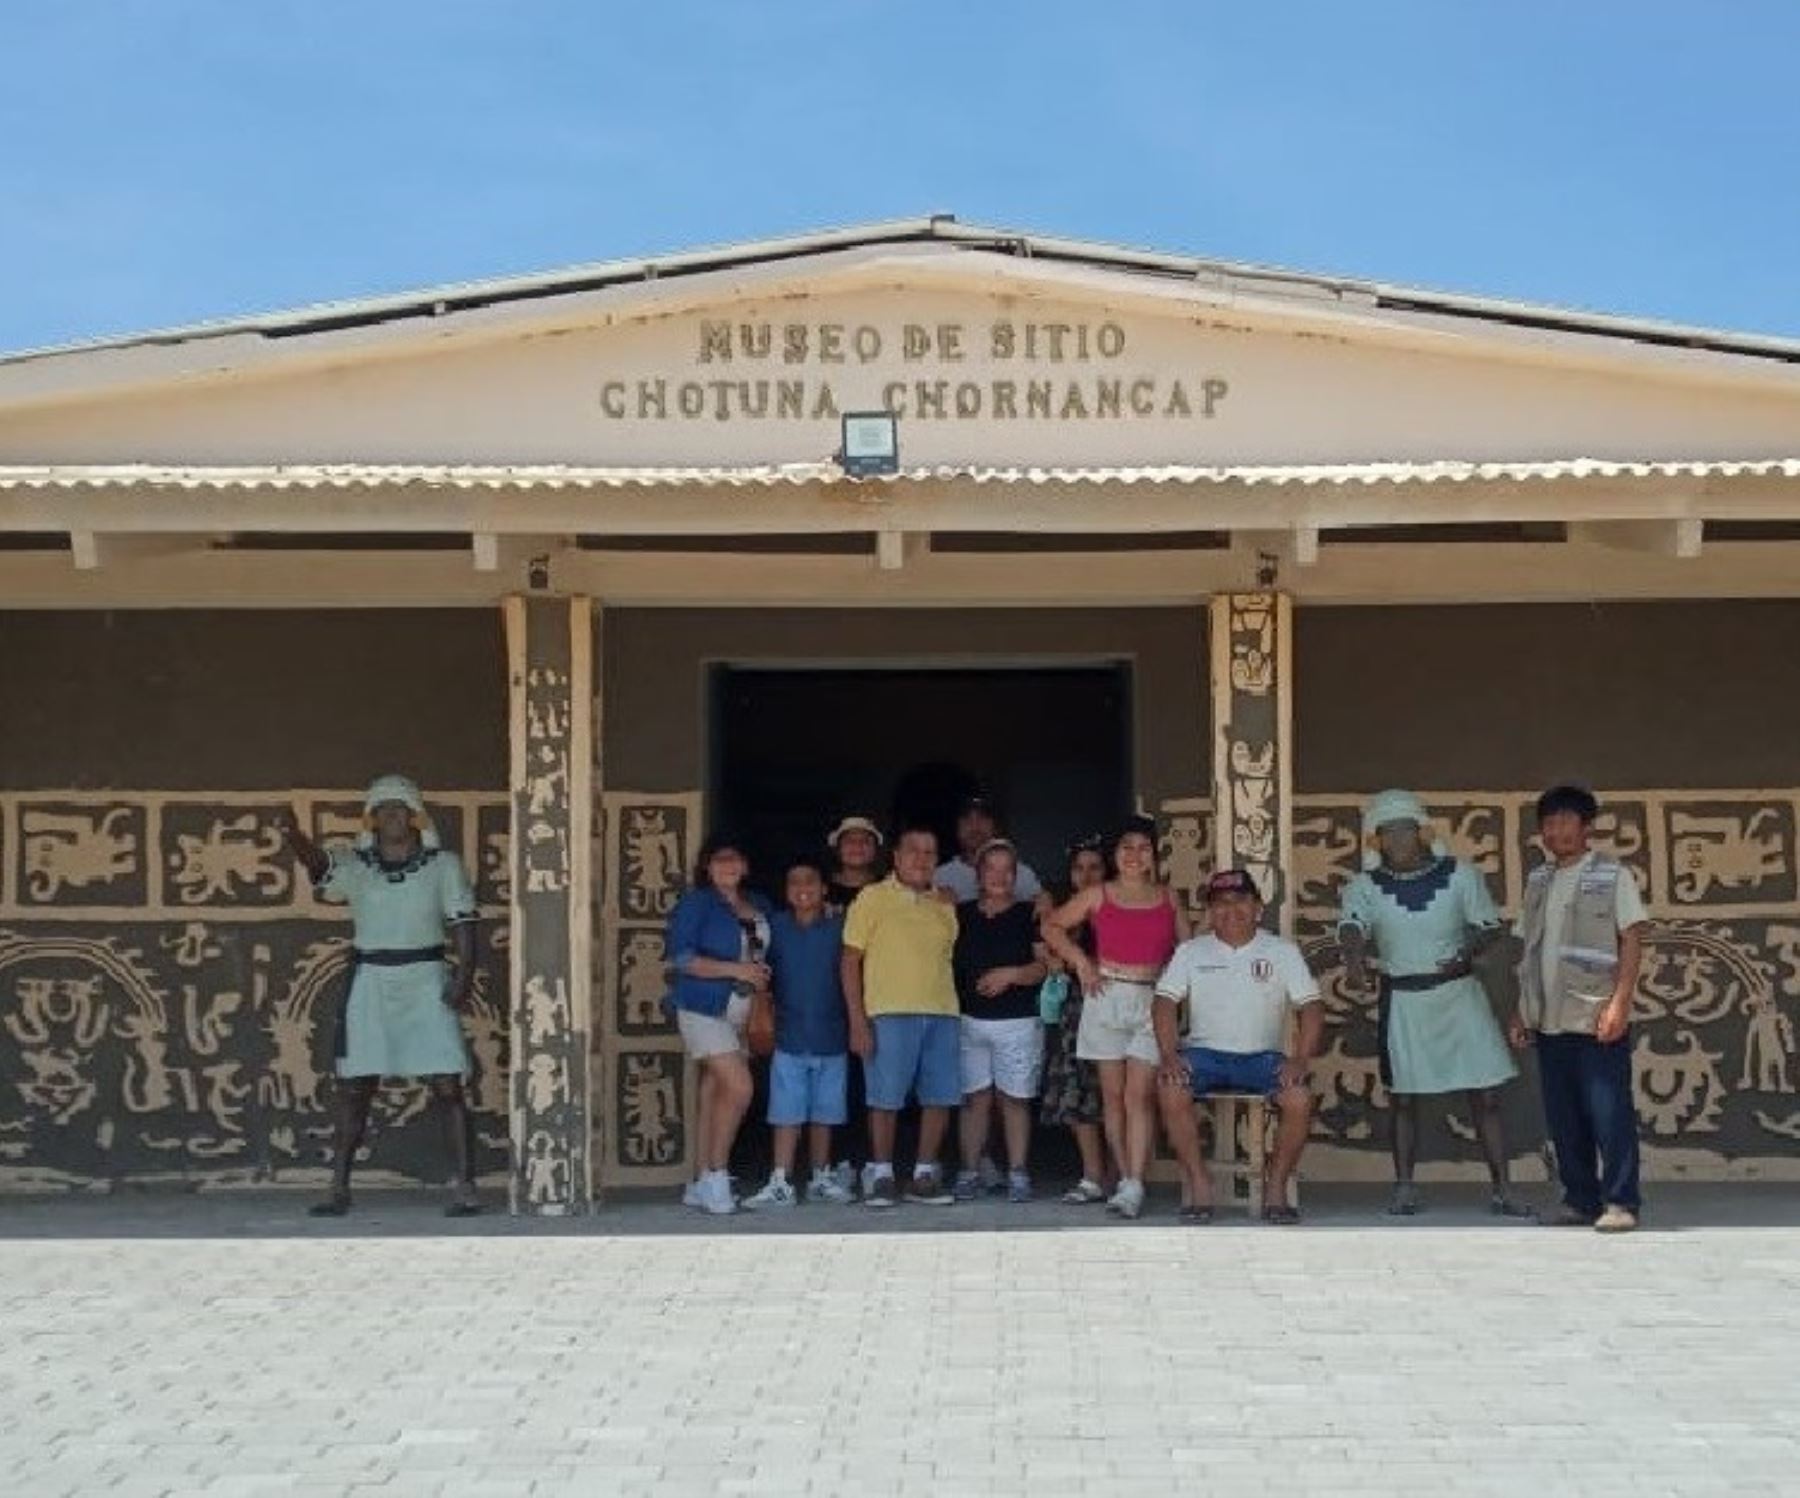 El museo Chotuna-Chornancap fue uno de los recintos más visitados por los turistas en el primer domingo de febrero, en el marco del programa Museos Abiertos del Ministerio de Cultura.